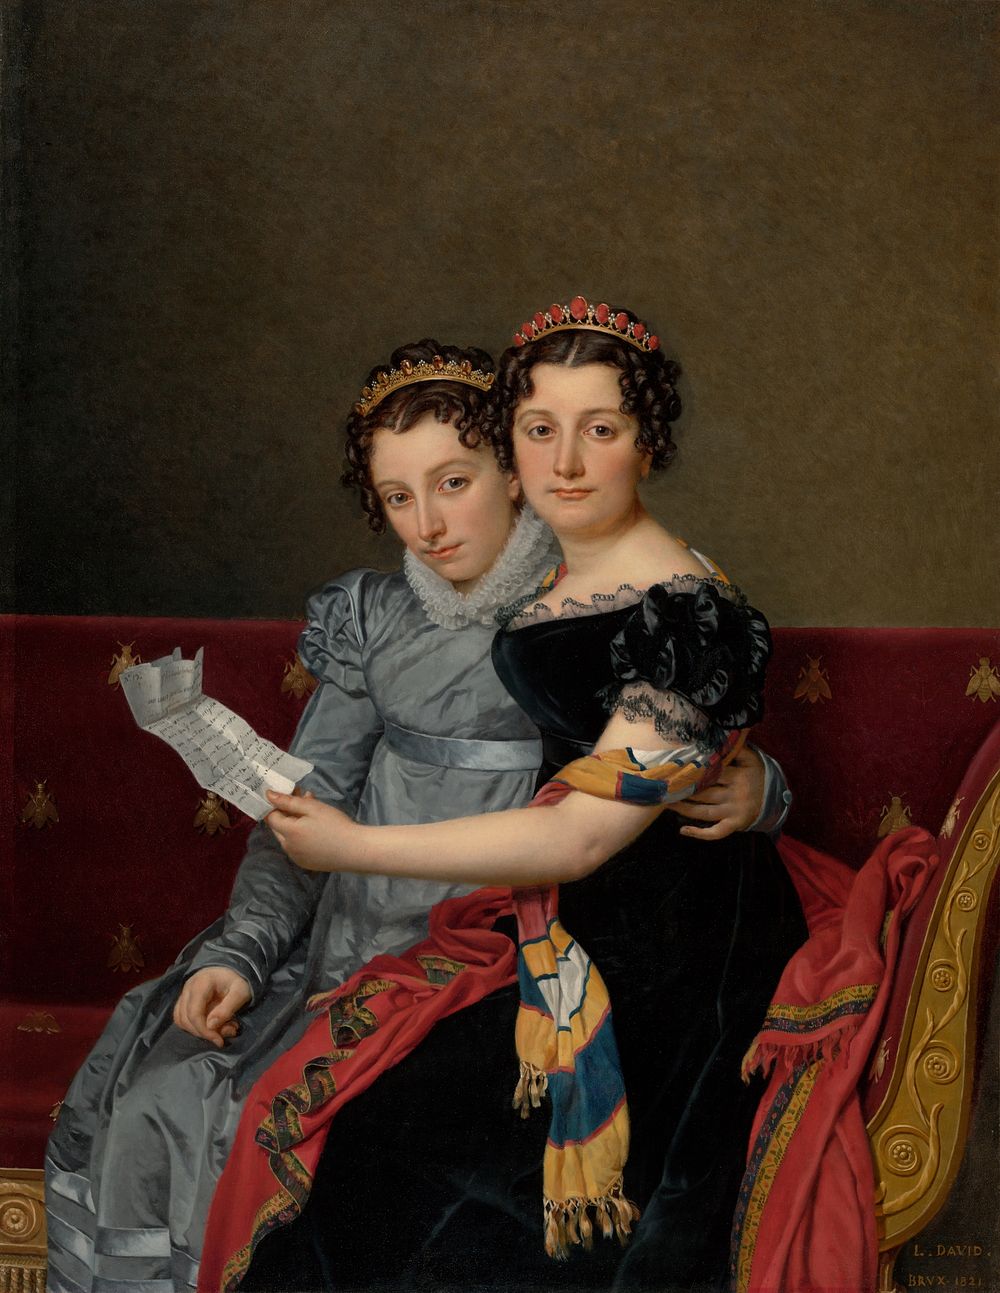 Portrait of the Sisters Zénaïde and Charlotte Bonaparte by Jacques Louis David